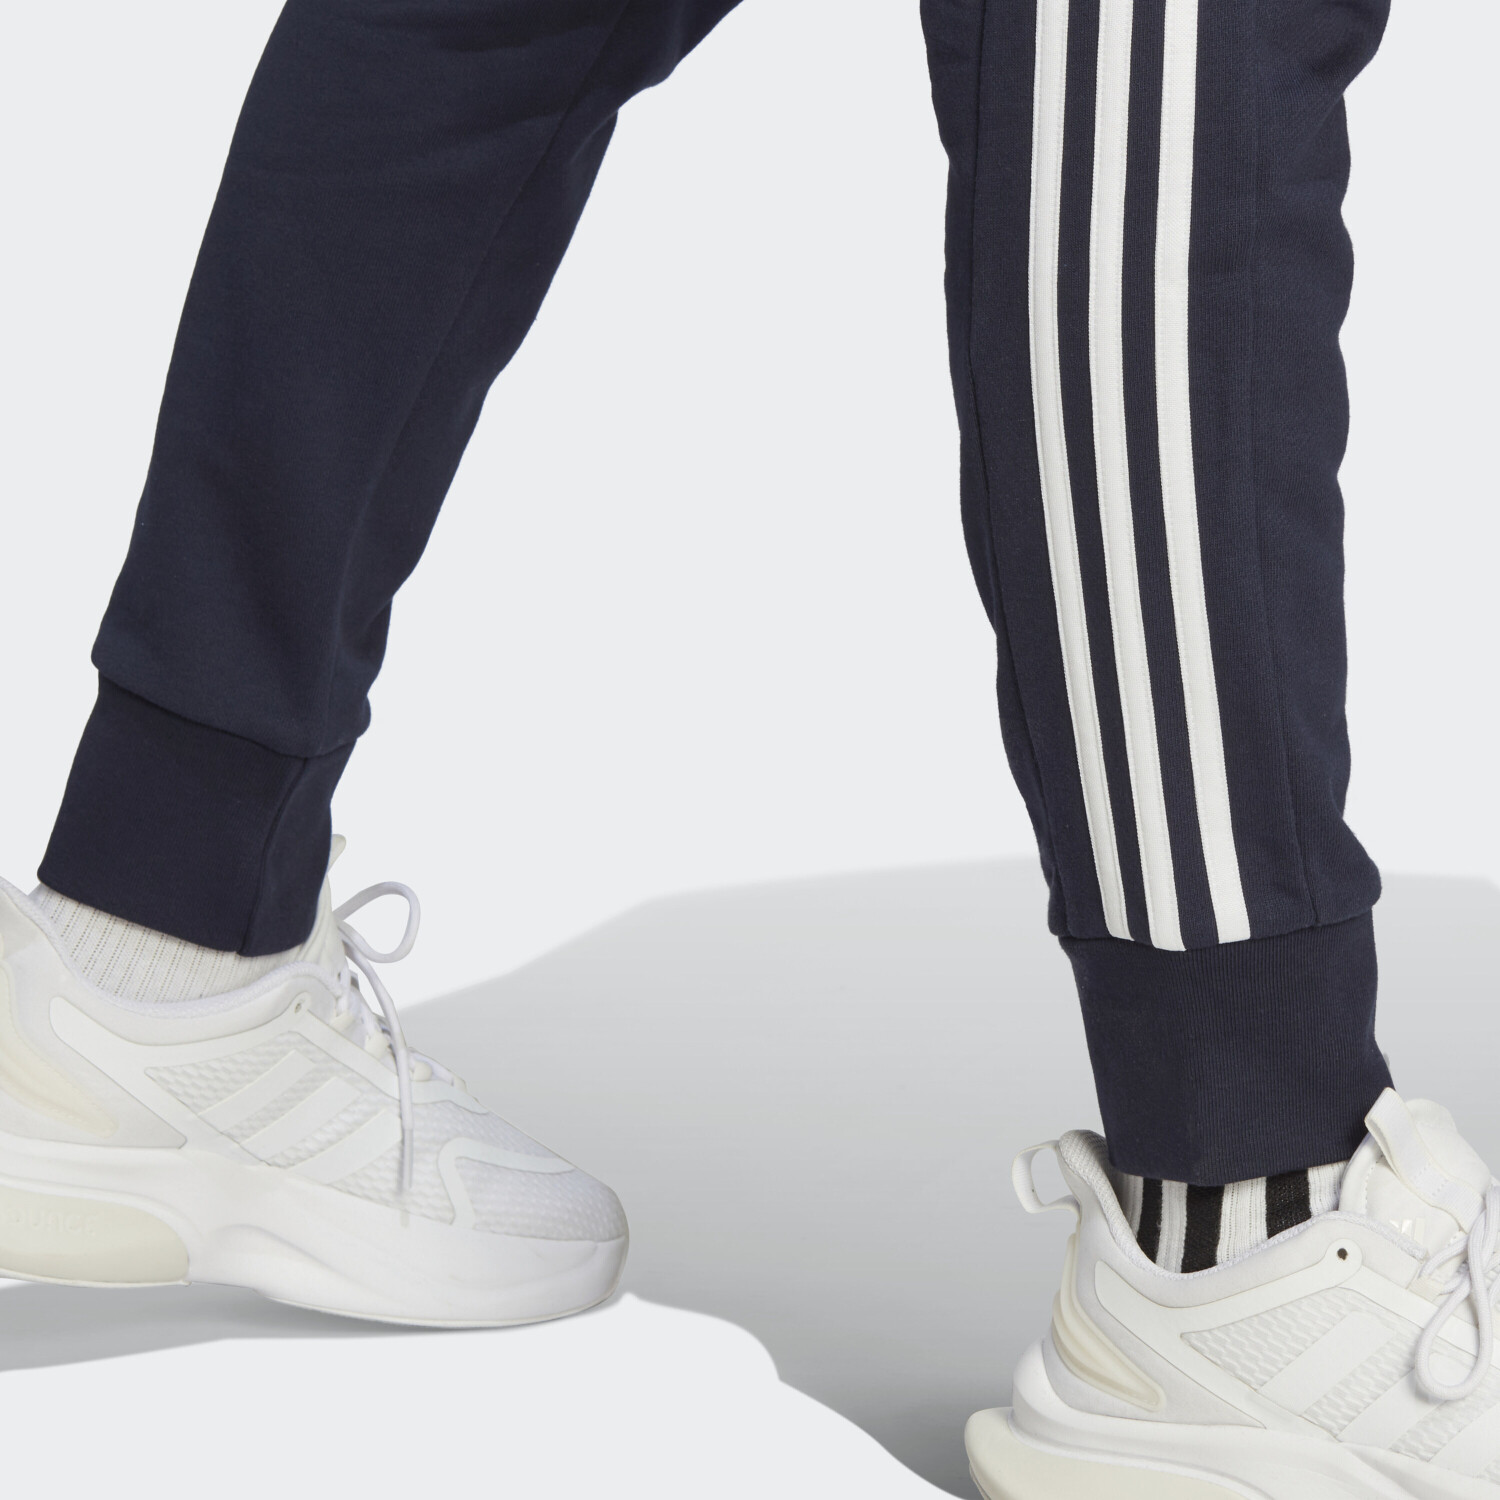 Adidas Essentials French Terry Tapered Cuff 3-Streifen Hose legend ink/white  ab 31,98 € | Preisvergleich bei